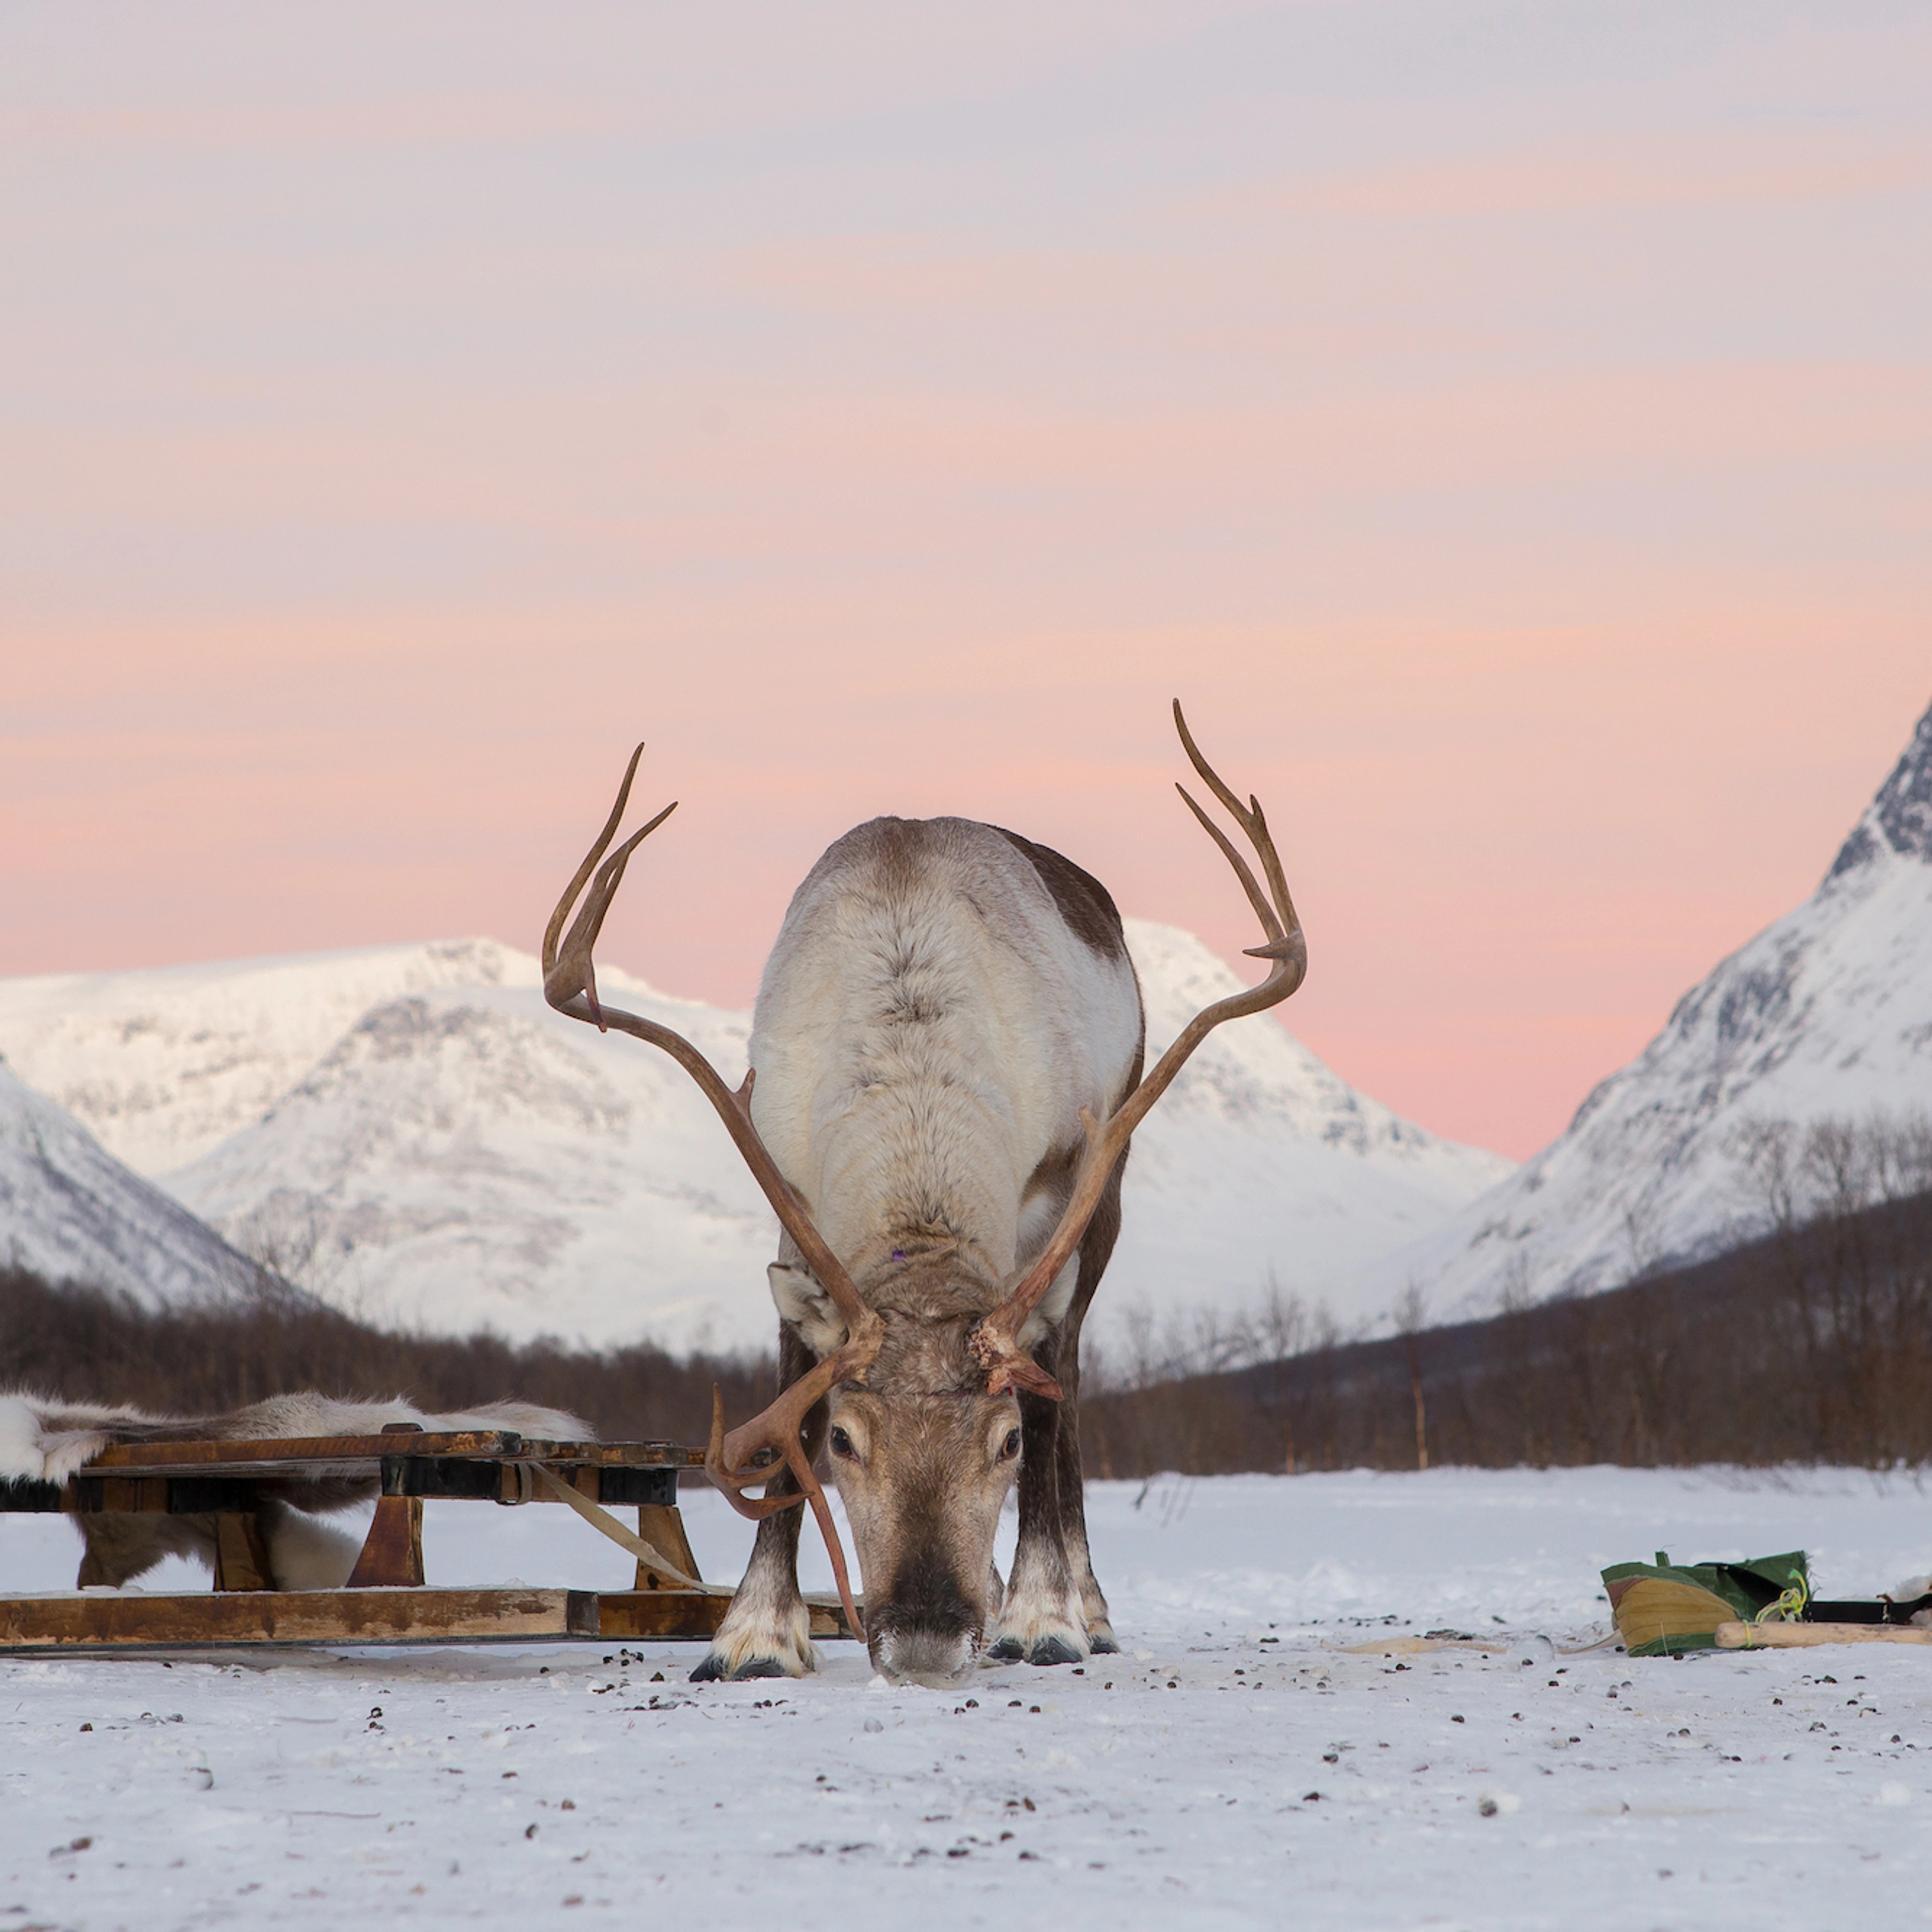 Reindeer In The Sunset - Tromsø, Norway